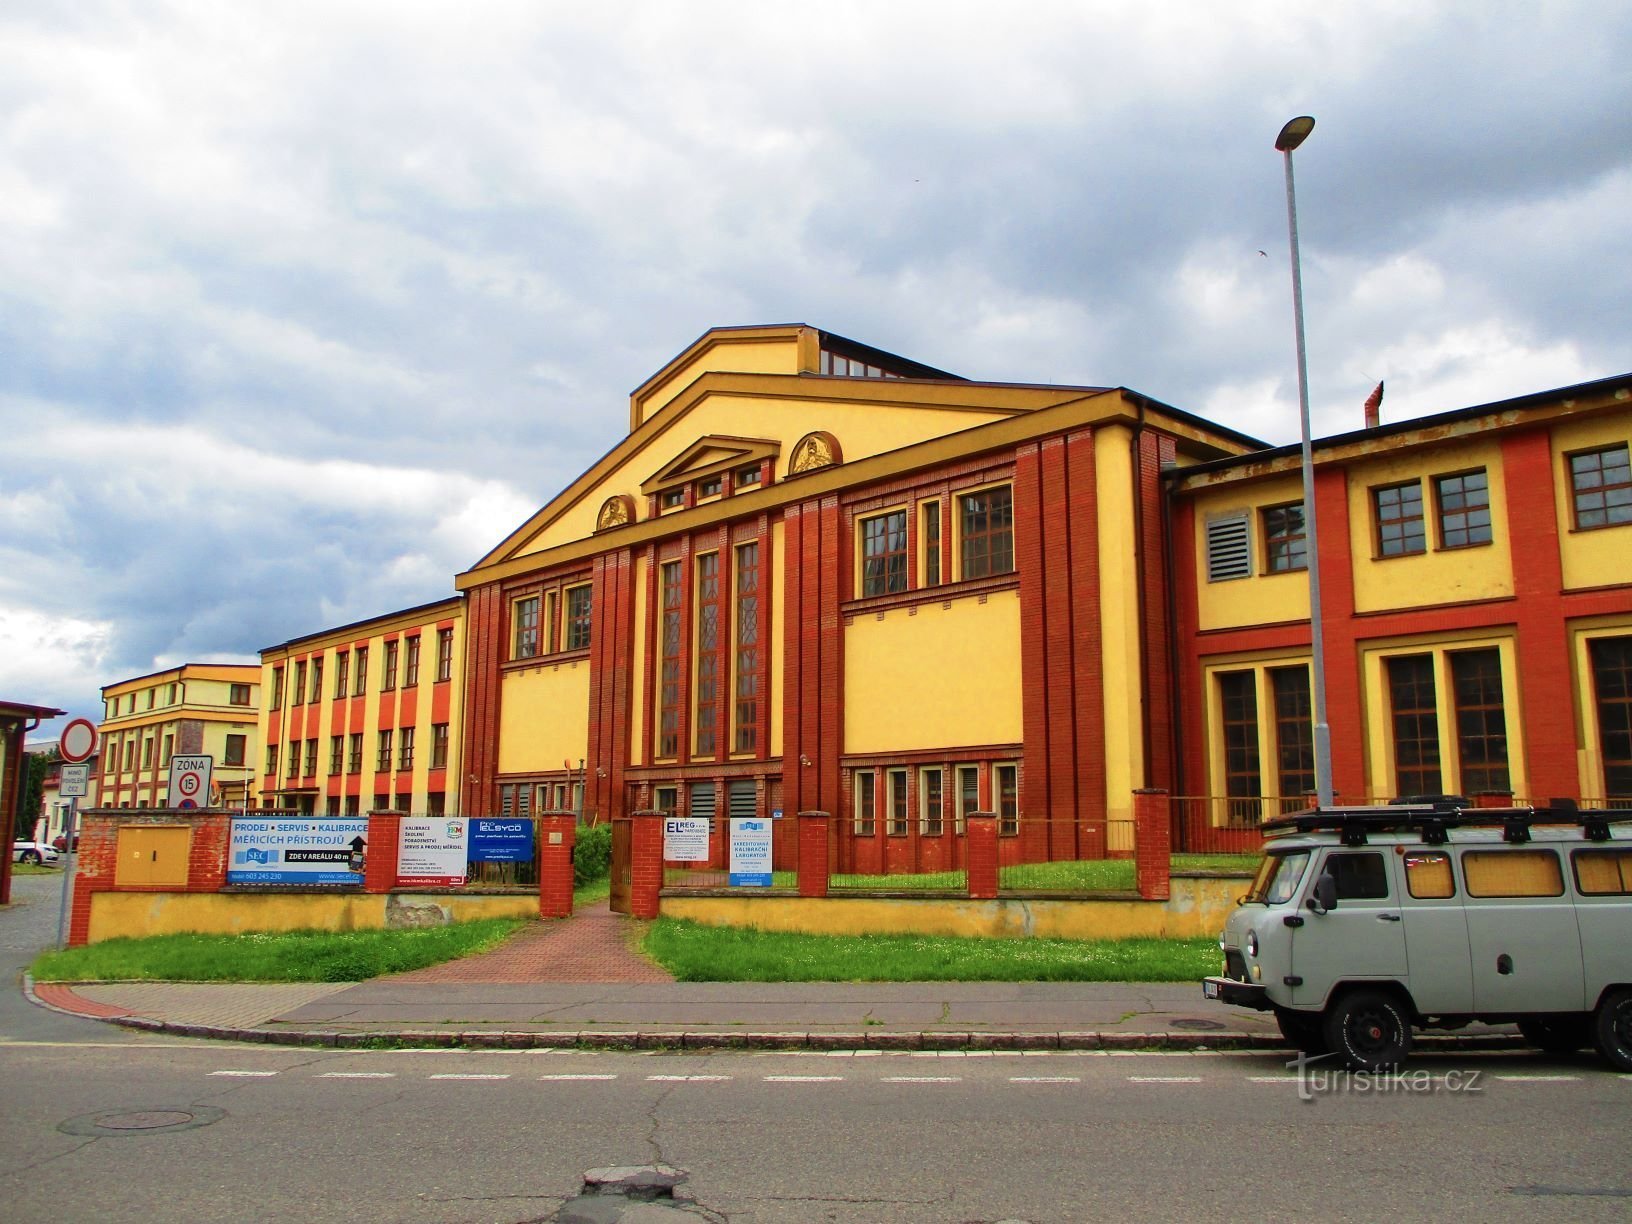 Khu vực nhà máy điện thành phố cũ (Pardubice, 25.5.2021/XNUMX/XNUMX)